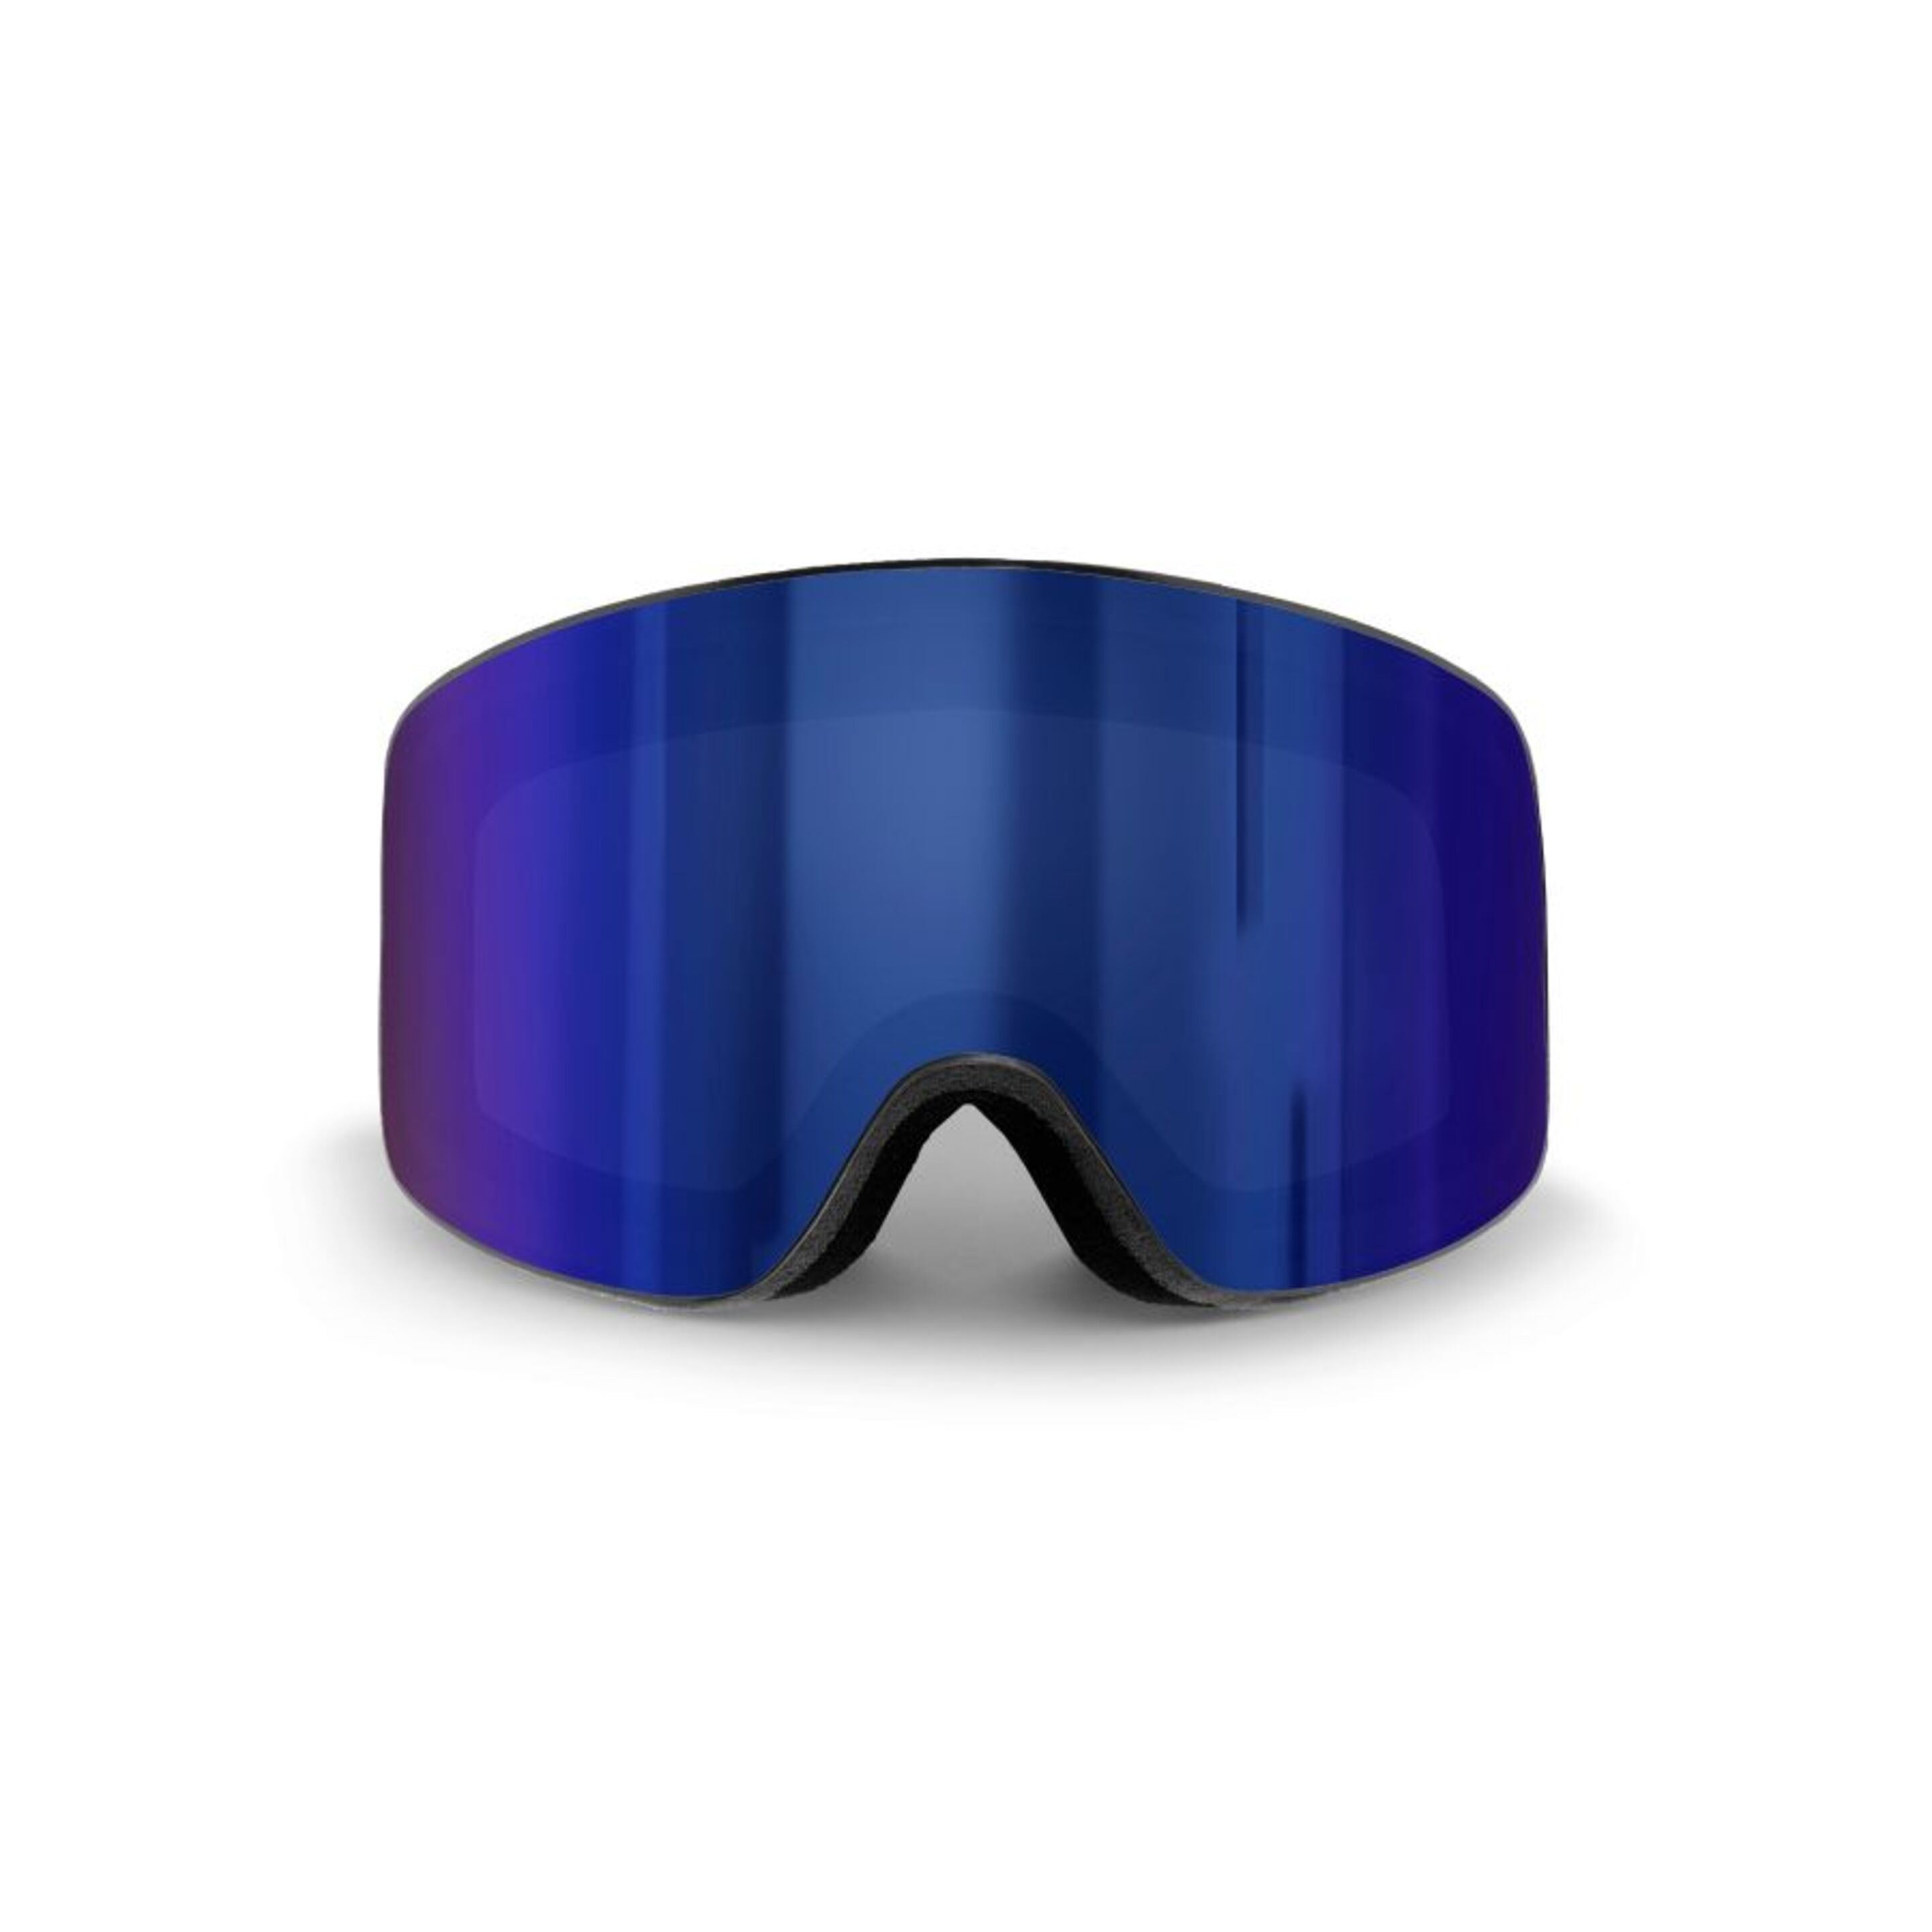 Mascara Ski Ocean Sunglasses Etna